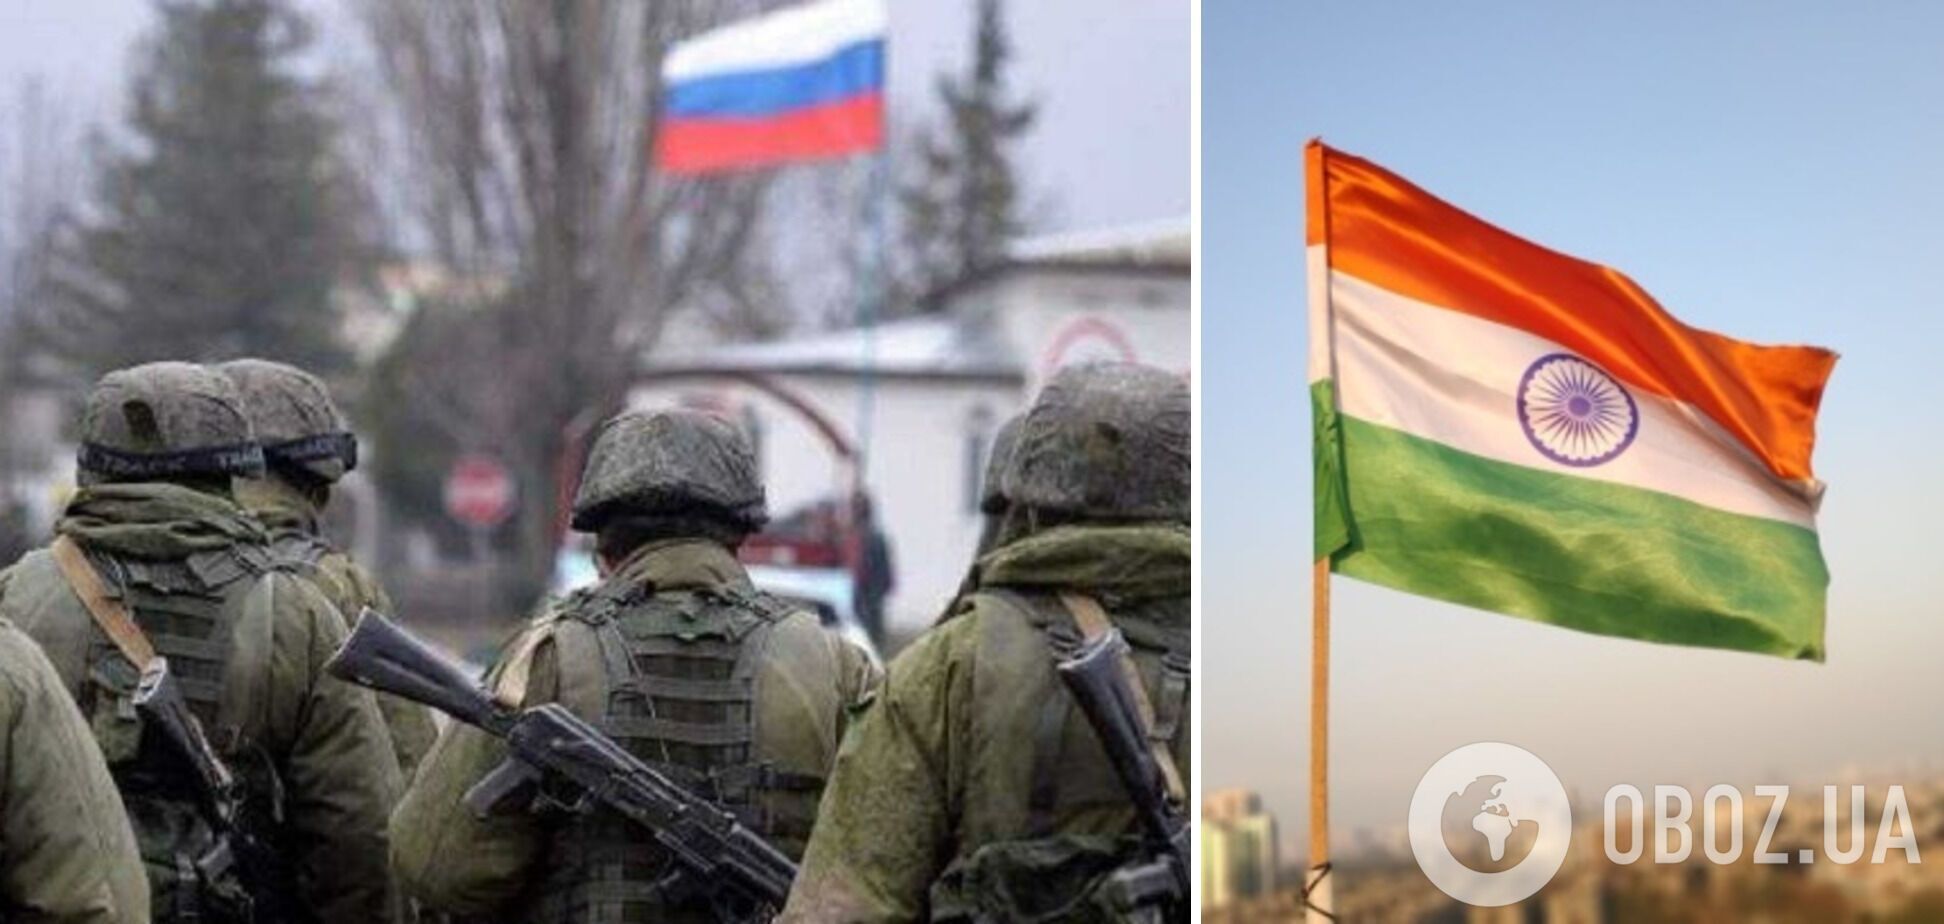 Індія намагається повернути своїх громадян, які воюють в Україні у складі армії РФ – FT
